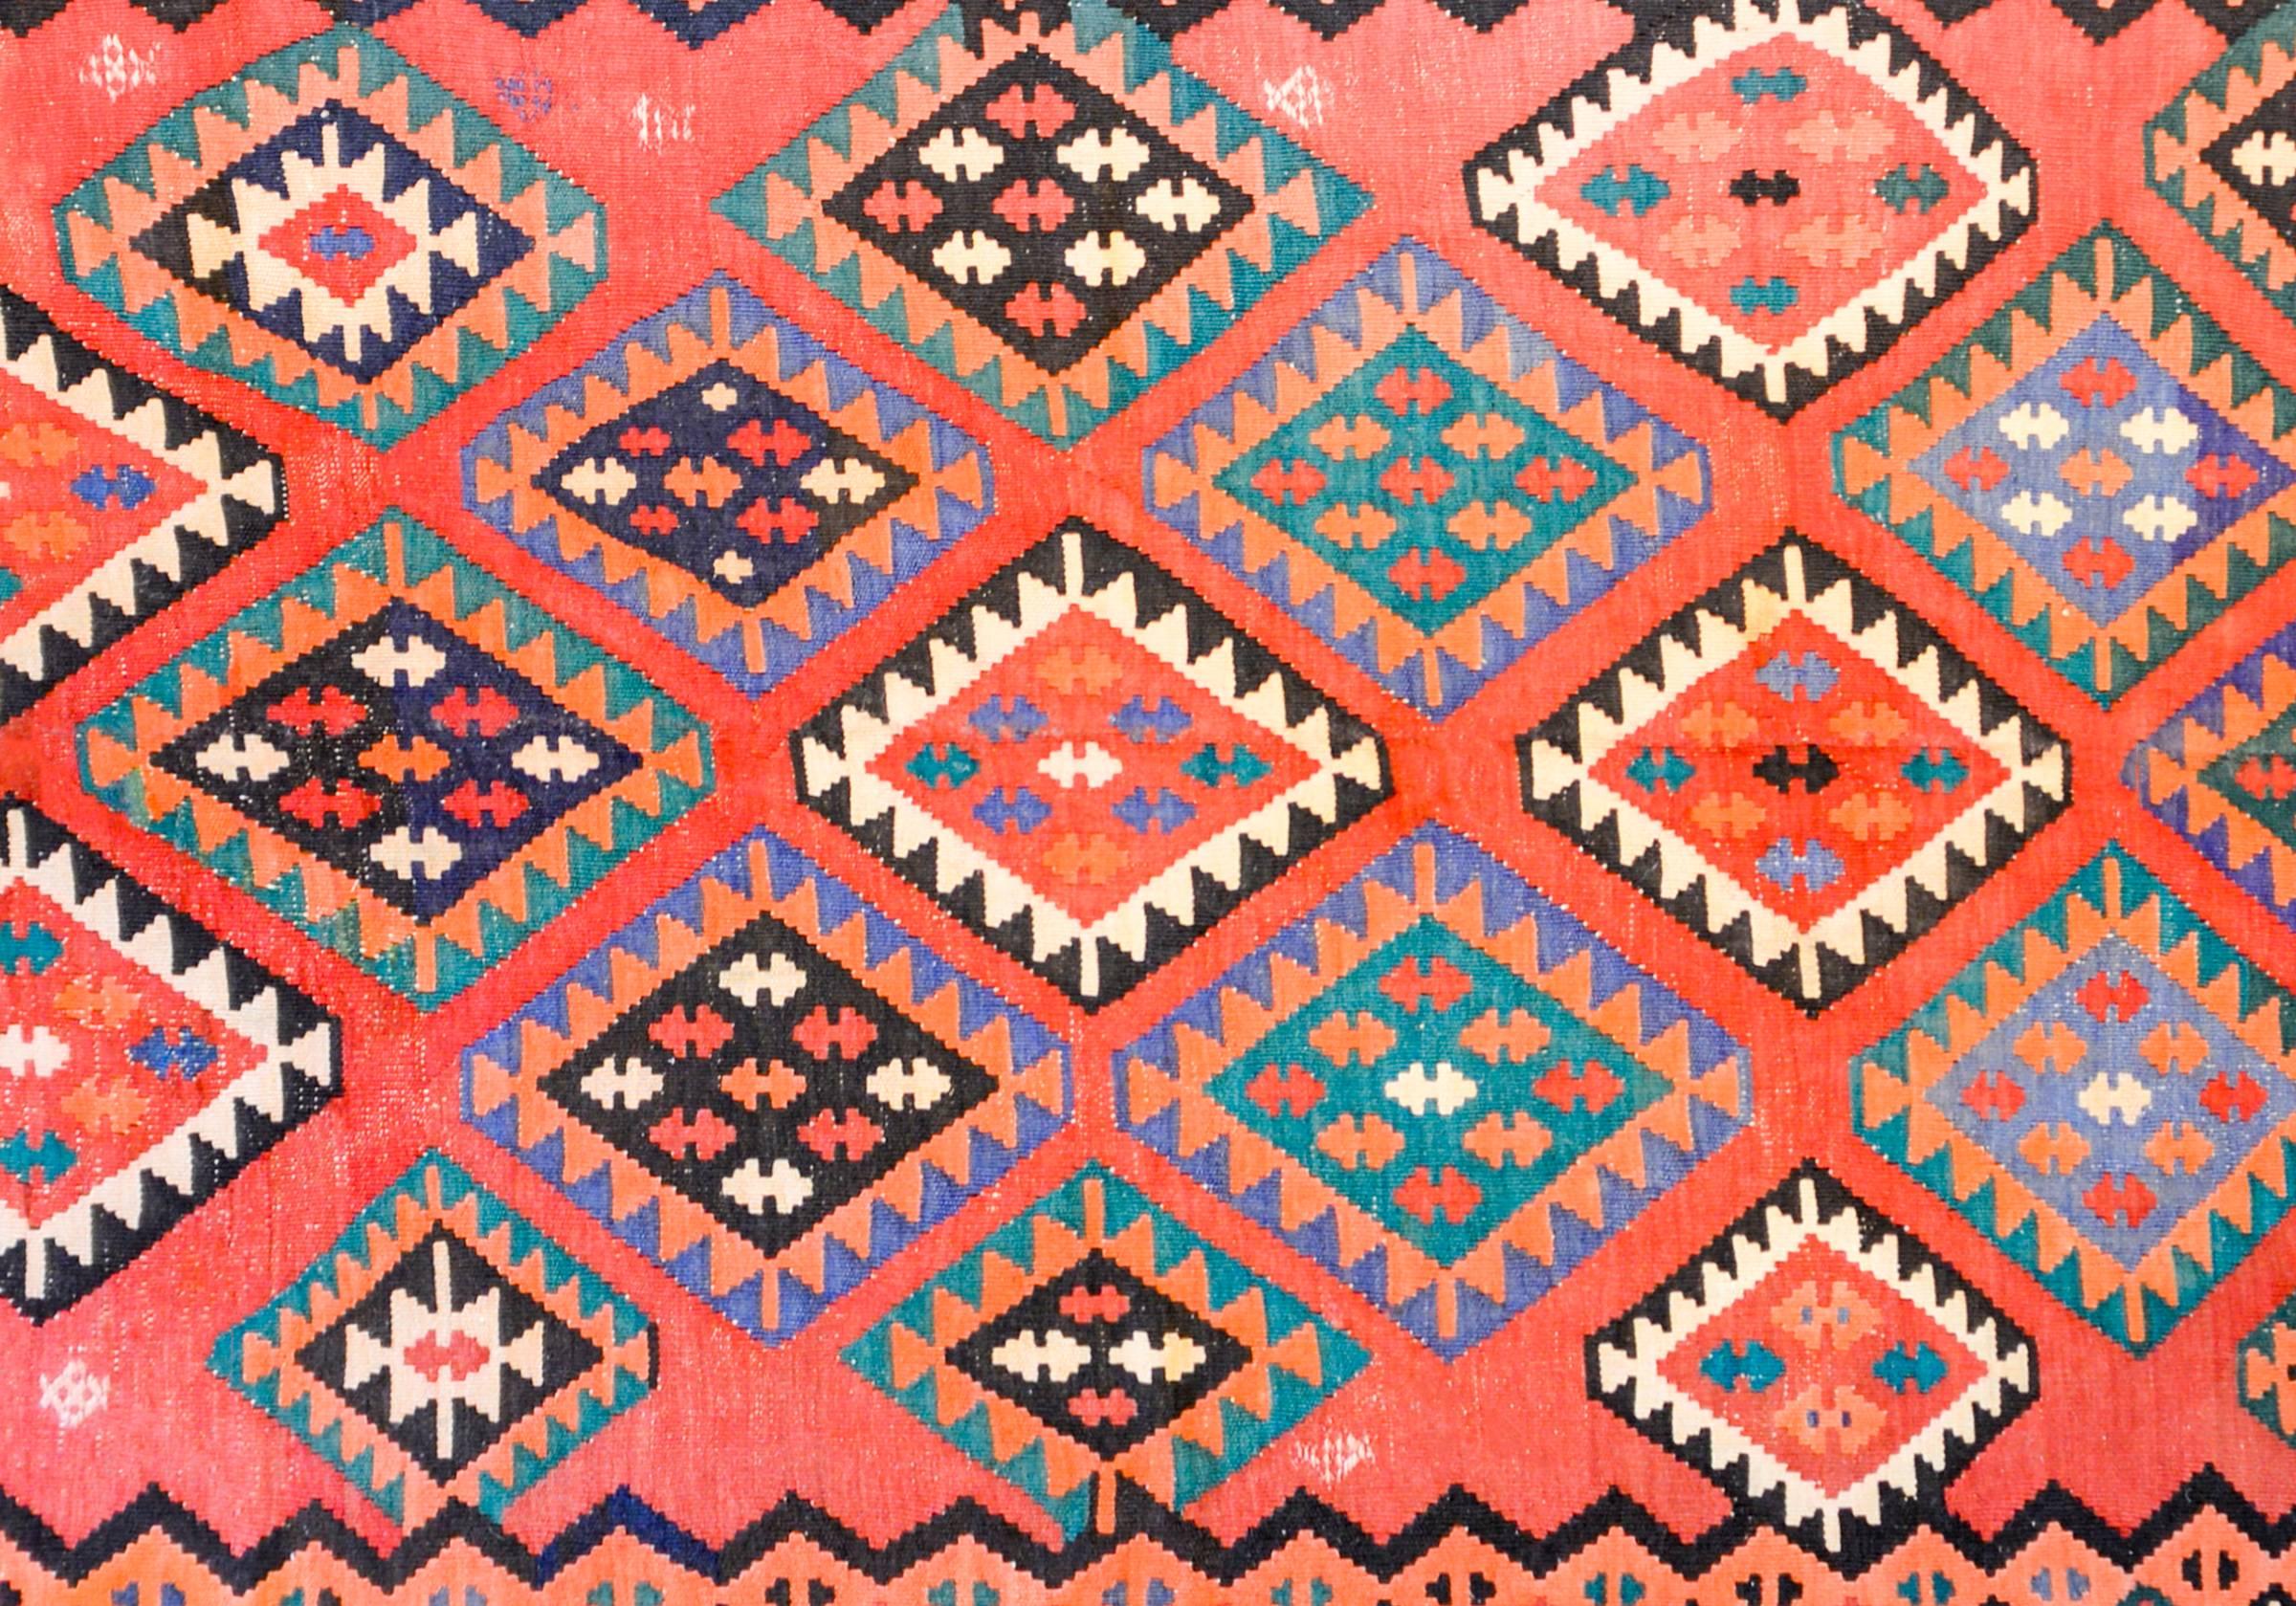 Un fantastique tapis de course Persan Qazvin du début du 20ème siècle avec un magnifique motif de diamants multicolores tissés en orange, lavande, noir et blanc sur un fond cramoisi pâle. La bordure est complémentaire avec un large motif géométrique